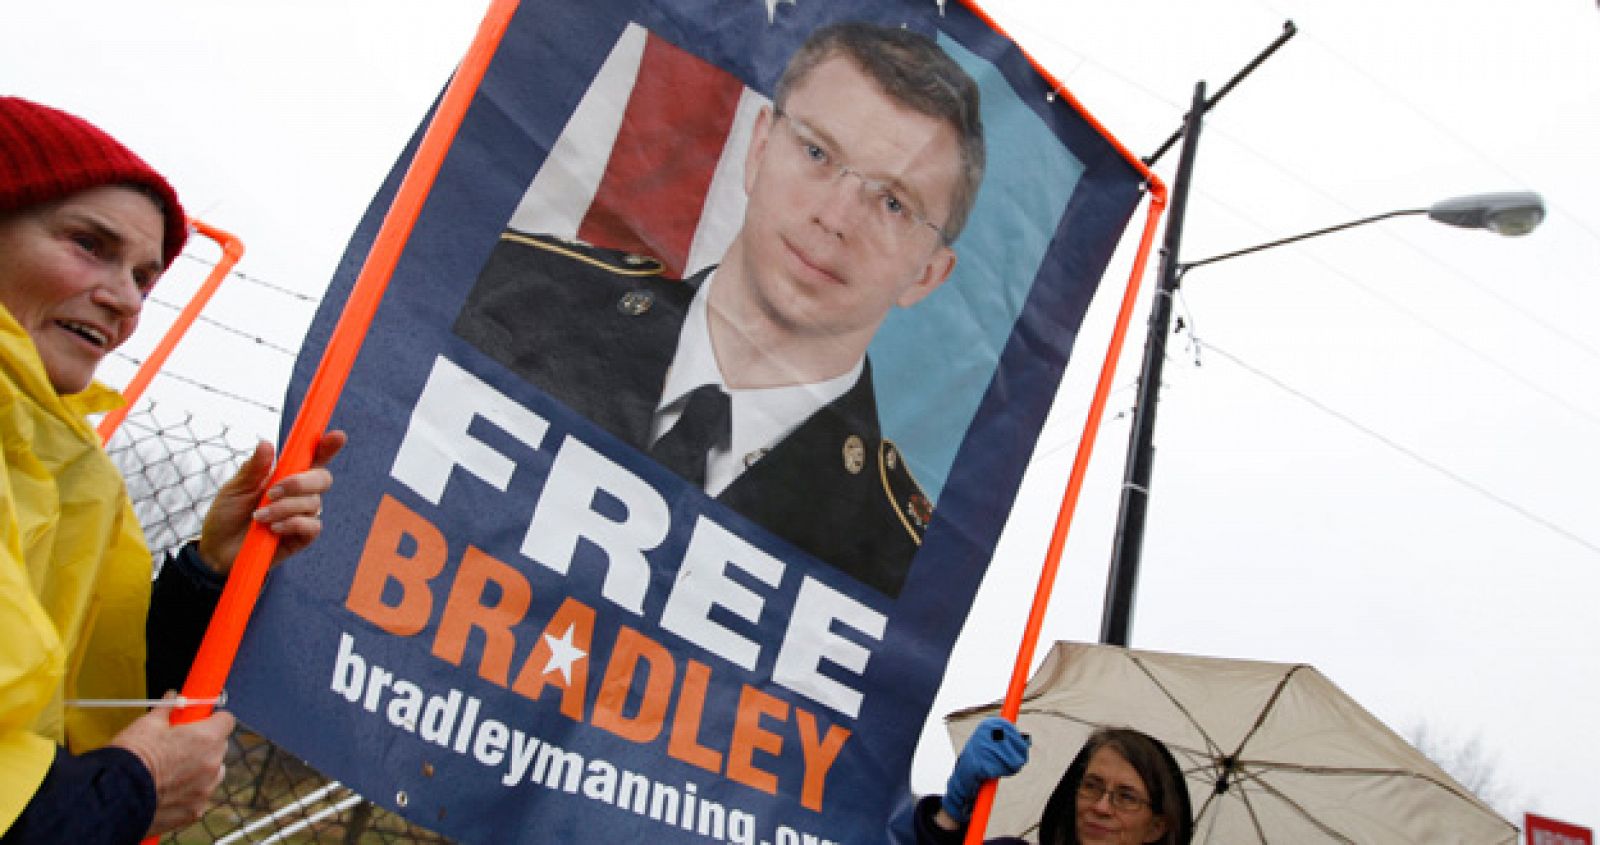 Protesta a favor de Bradley Manning fuera de las puertas de Fort Meade, Maryland